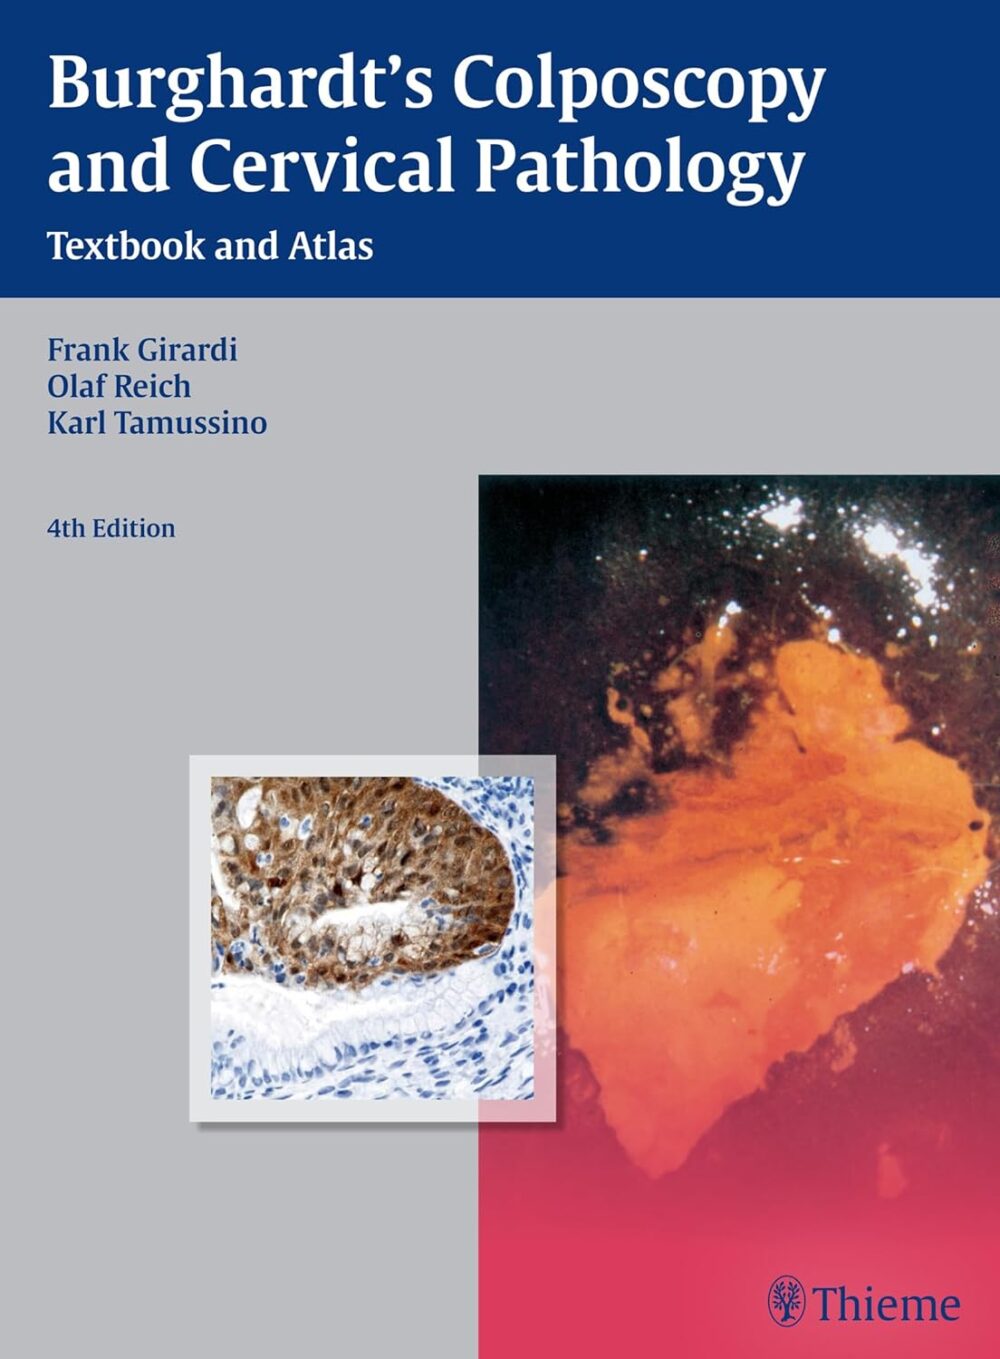 Llibre de text i atles de colposcòpia i patologia cervical de Burghardt 4a edició